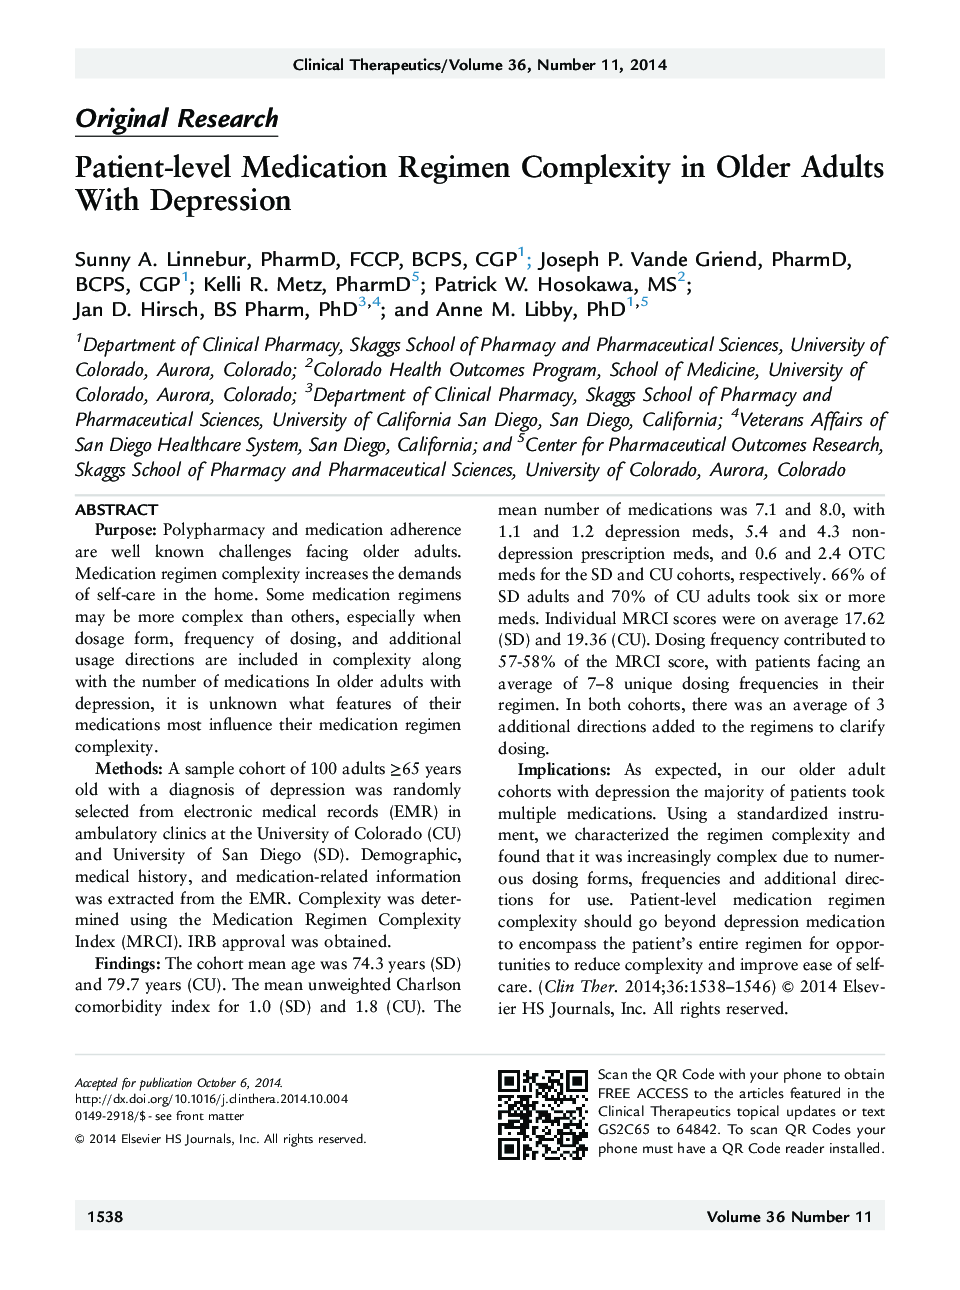 پیچیدگی رژیم دارویی در بیماران در بزرگسالان سالمند مبتلا به افسردگی 